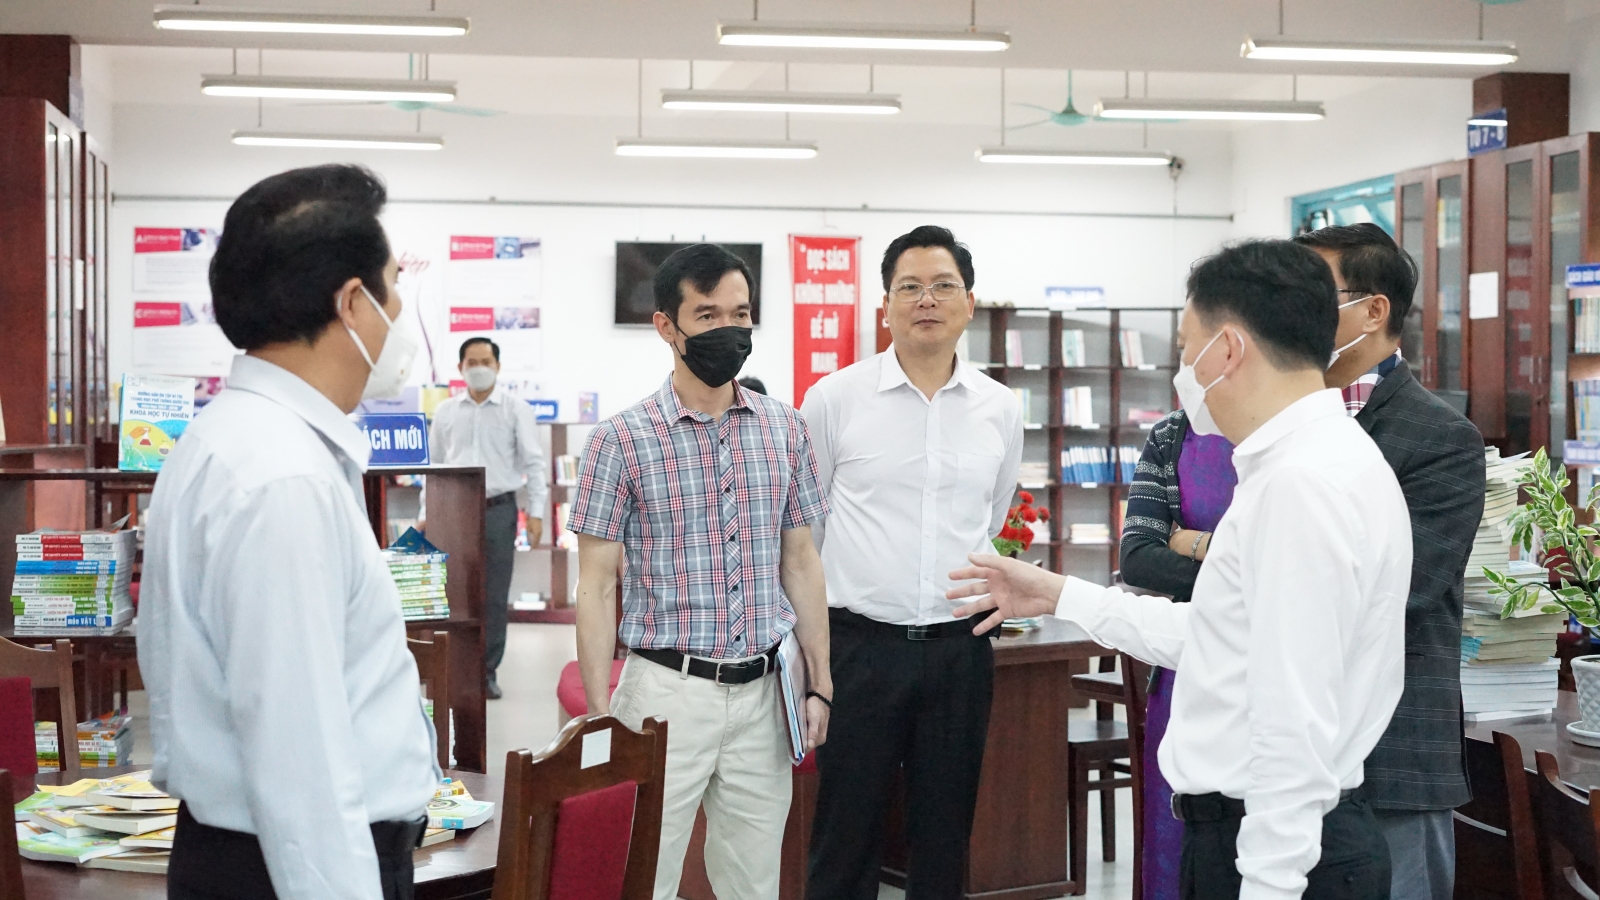 Đoàn công tác của Bộ GD&ĐT kiểm tra cơ sở vật chất trường học tại Thừa Thiên - Huế - Ảnh minh hoạ 4